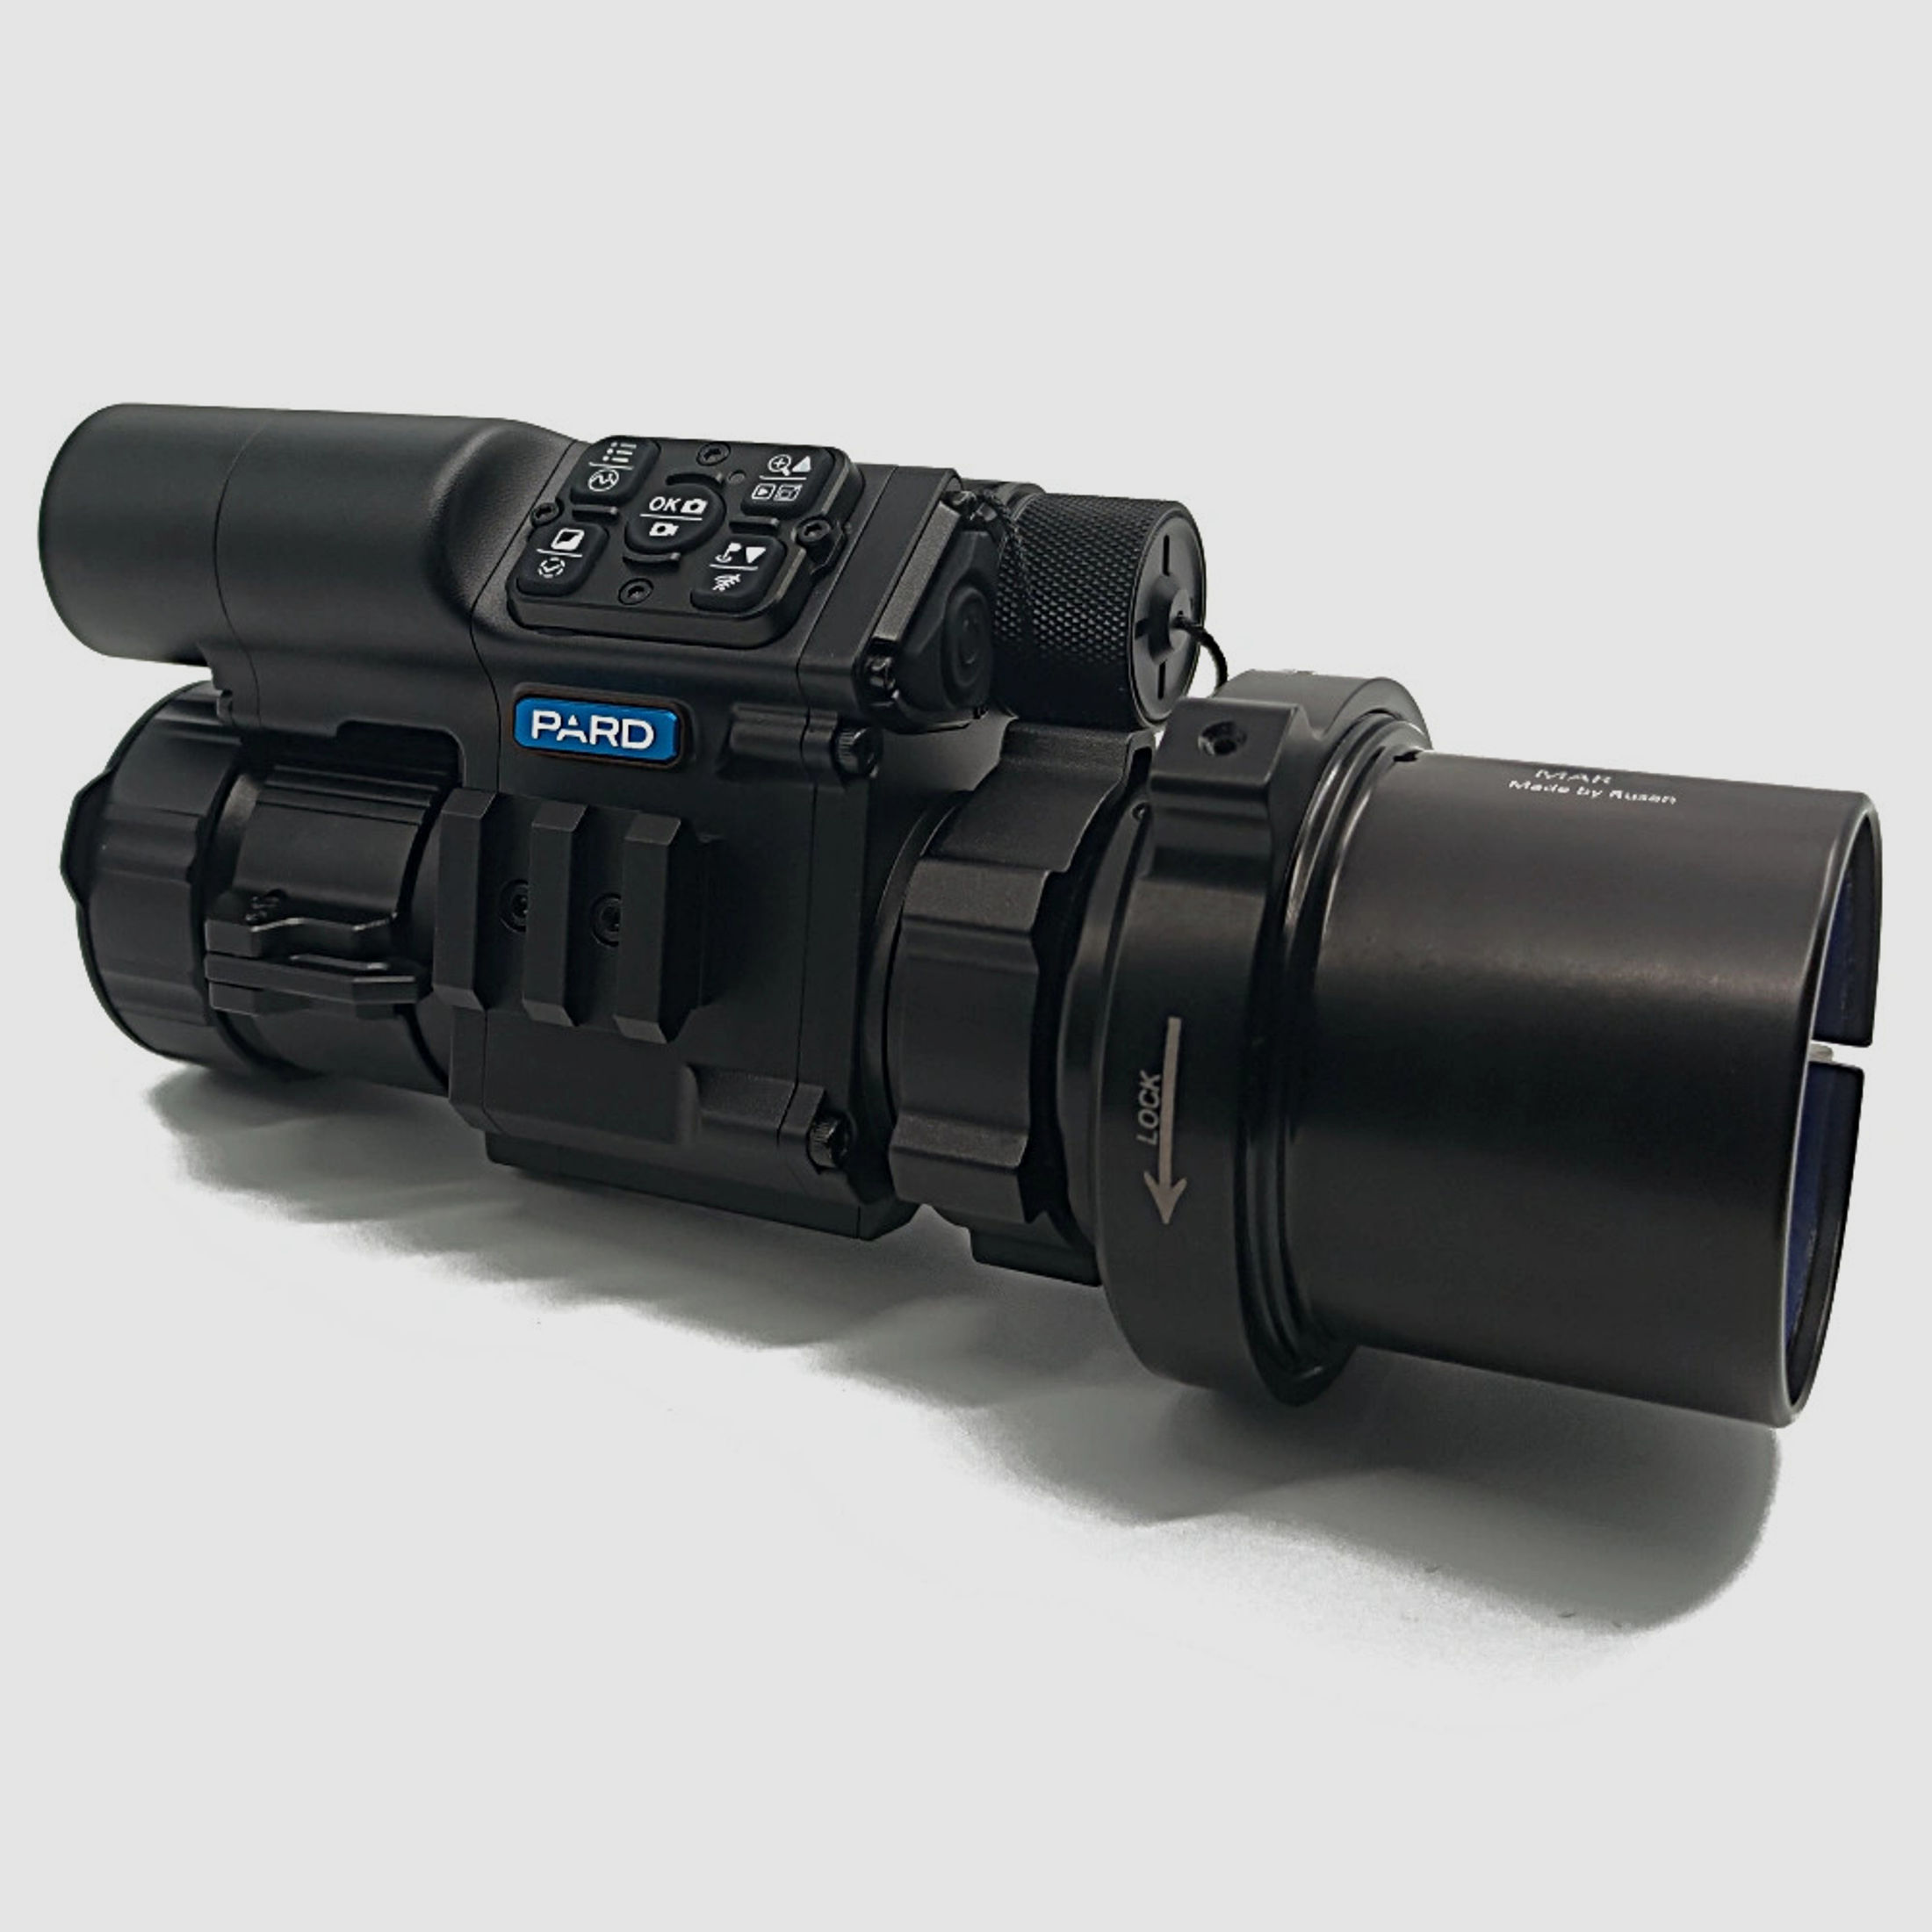 PARD FD1 Nachtsicht 3 in 1 Vorsatz, Monokular & Zielfernrohr - 850 nm mit LRF 56 mm RUSAN MAR + RUSAN MCR